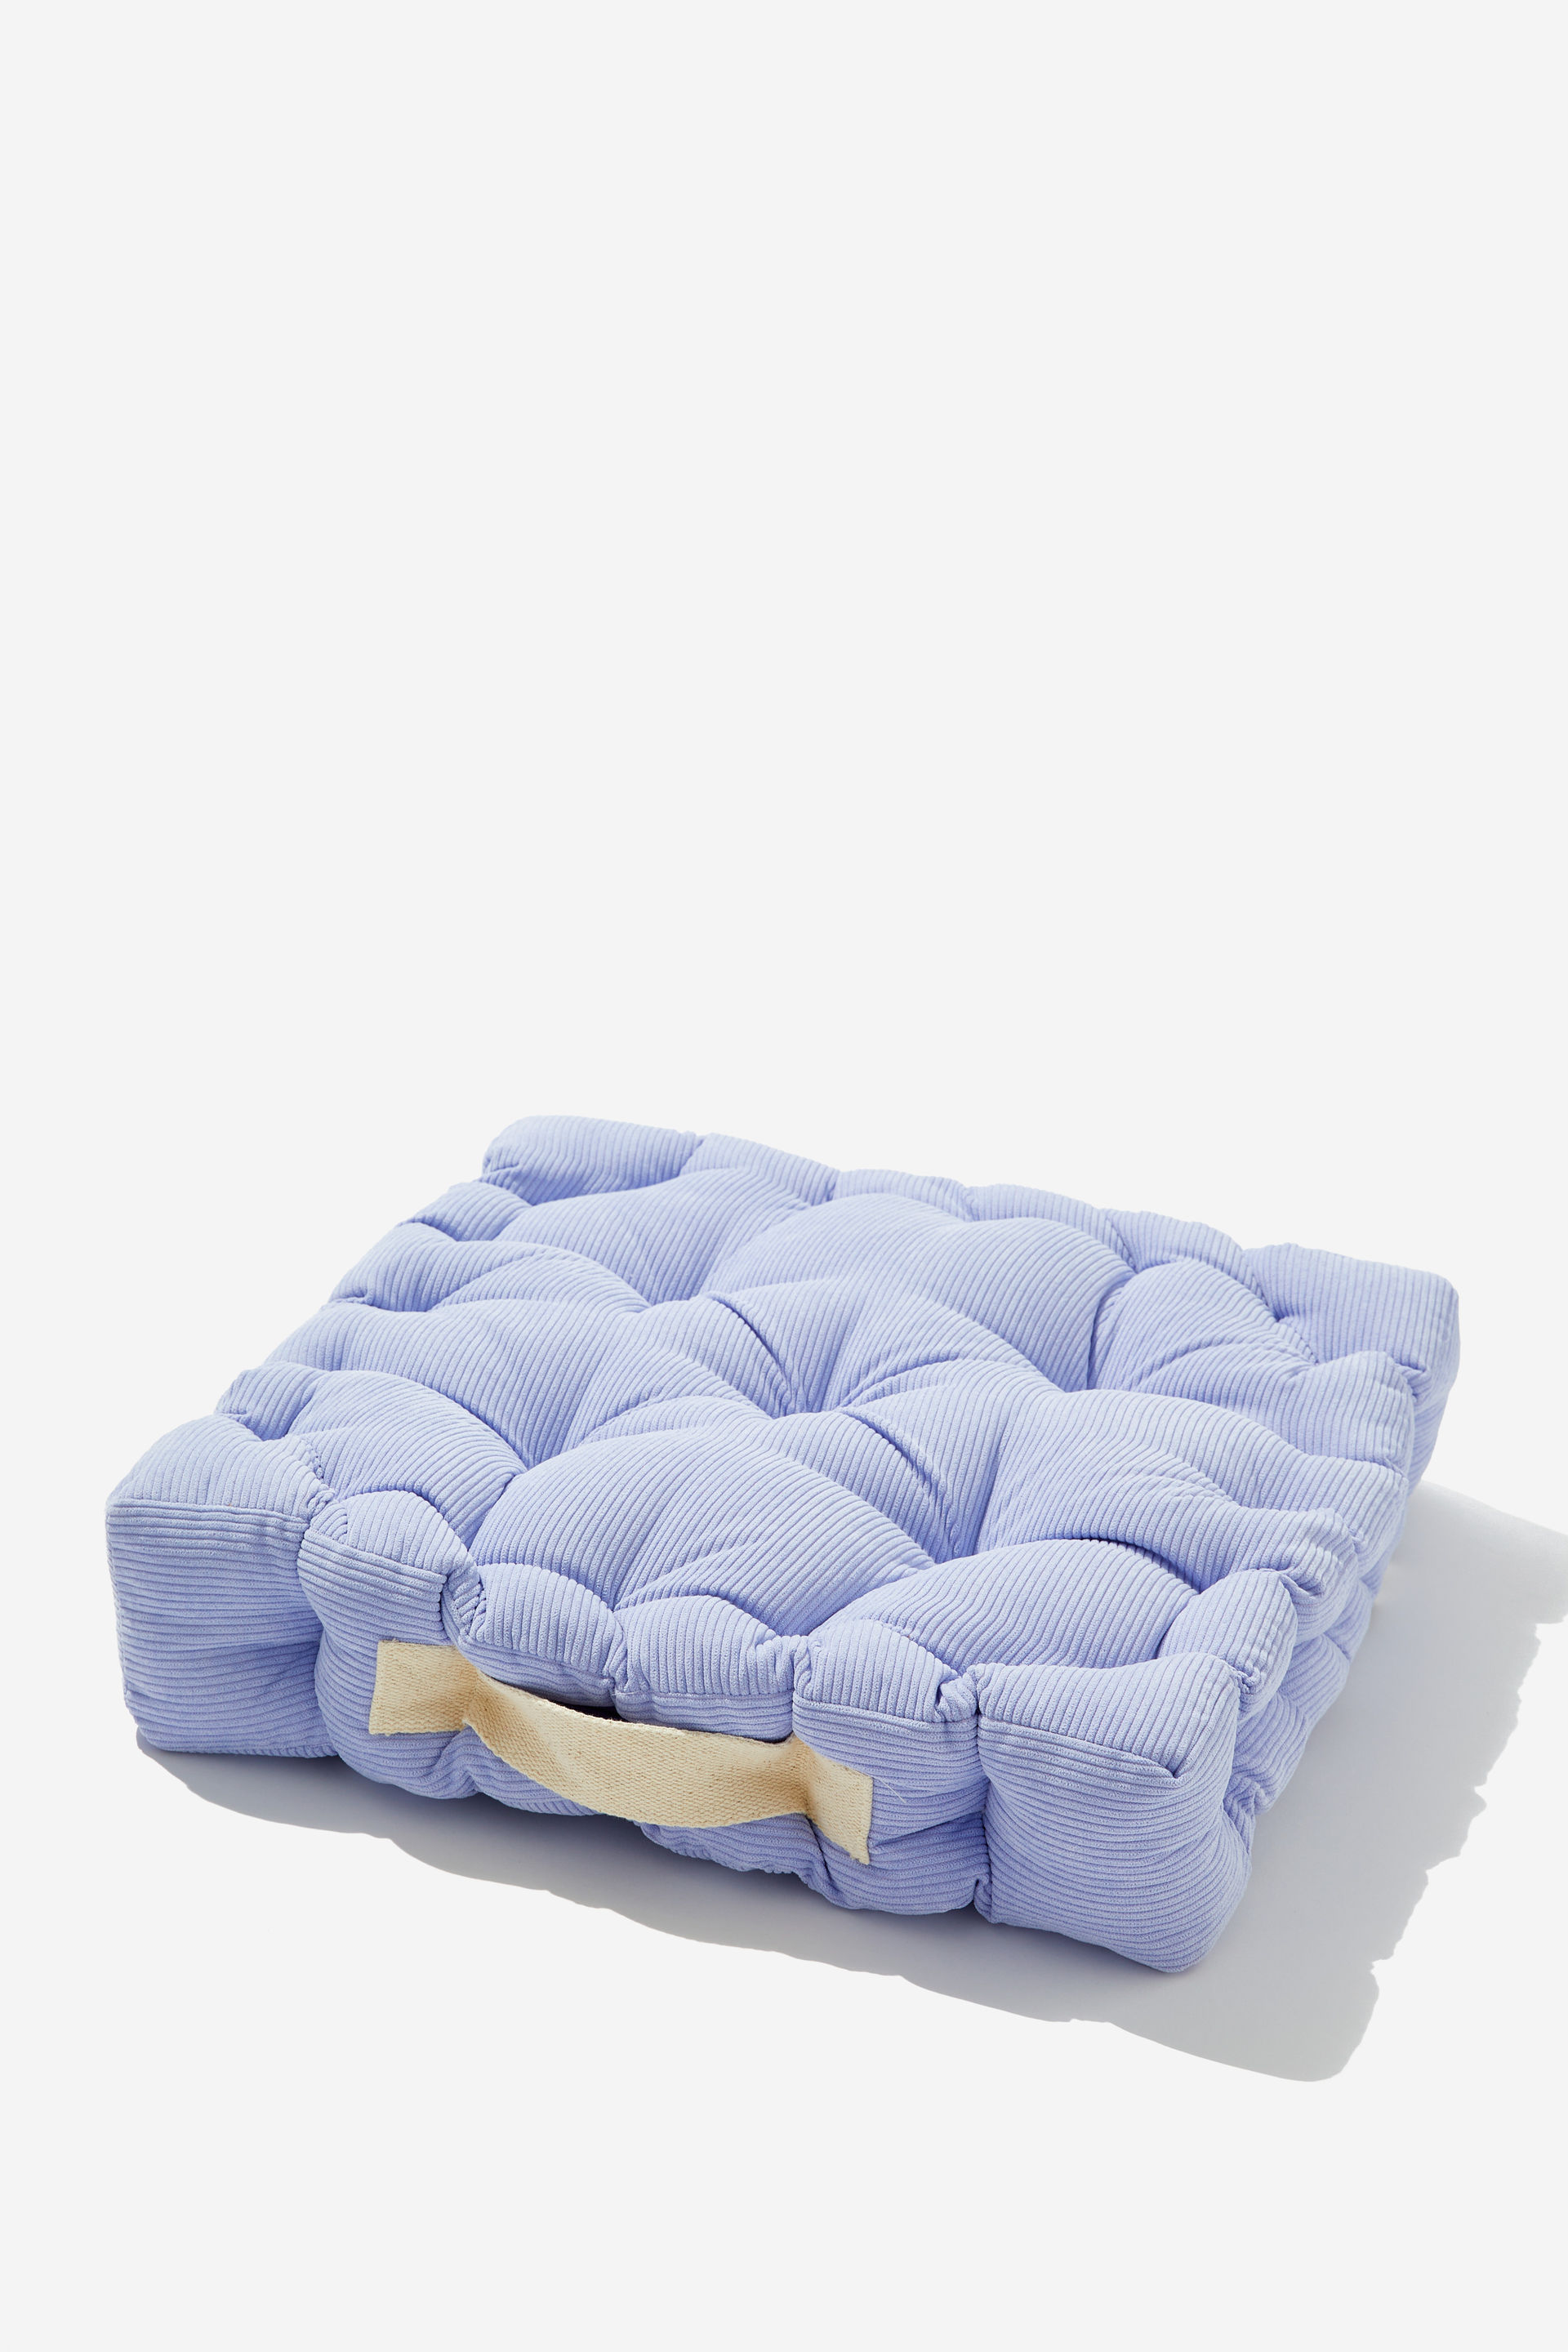 Typo - Floor Cushion - Soft lilac